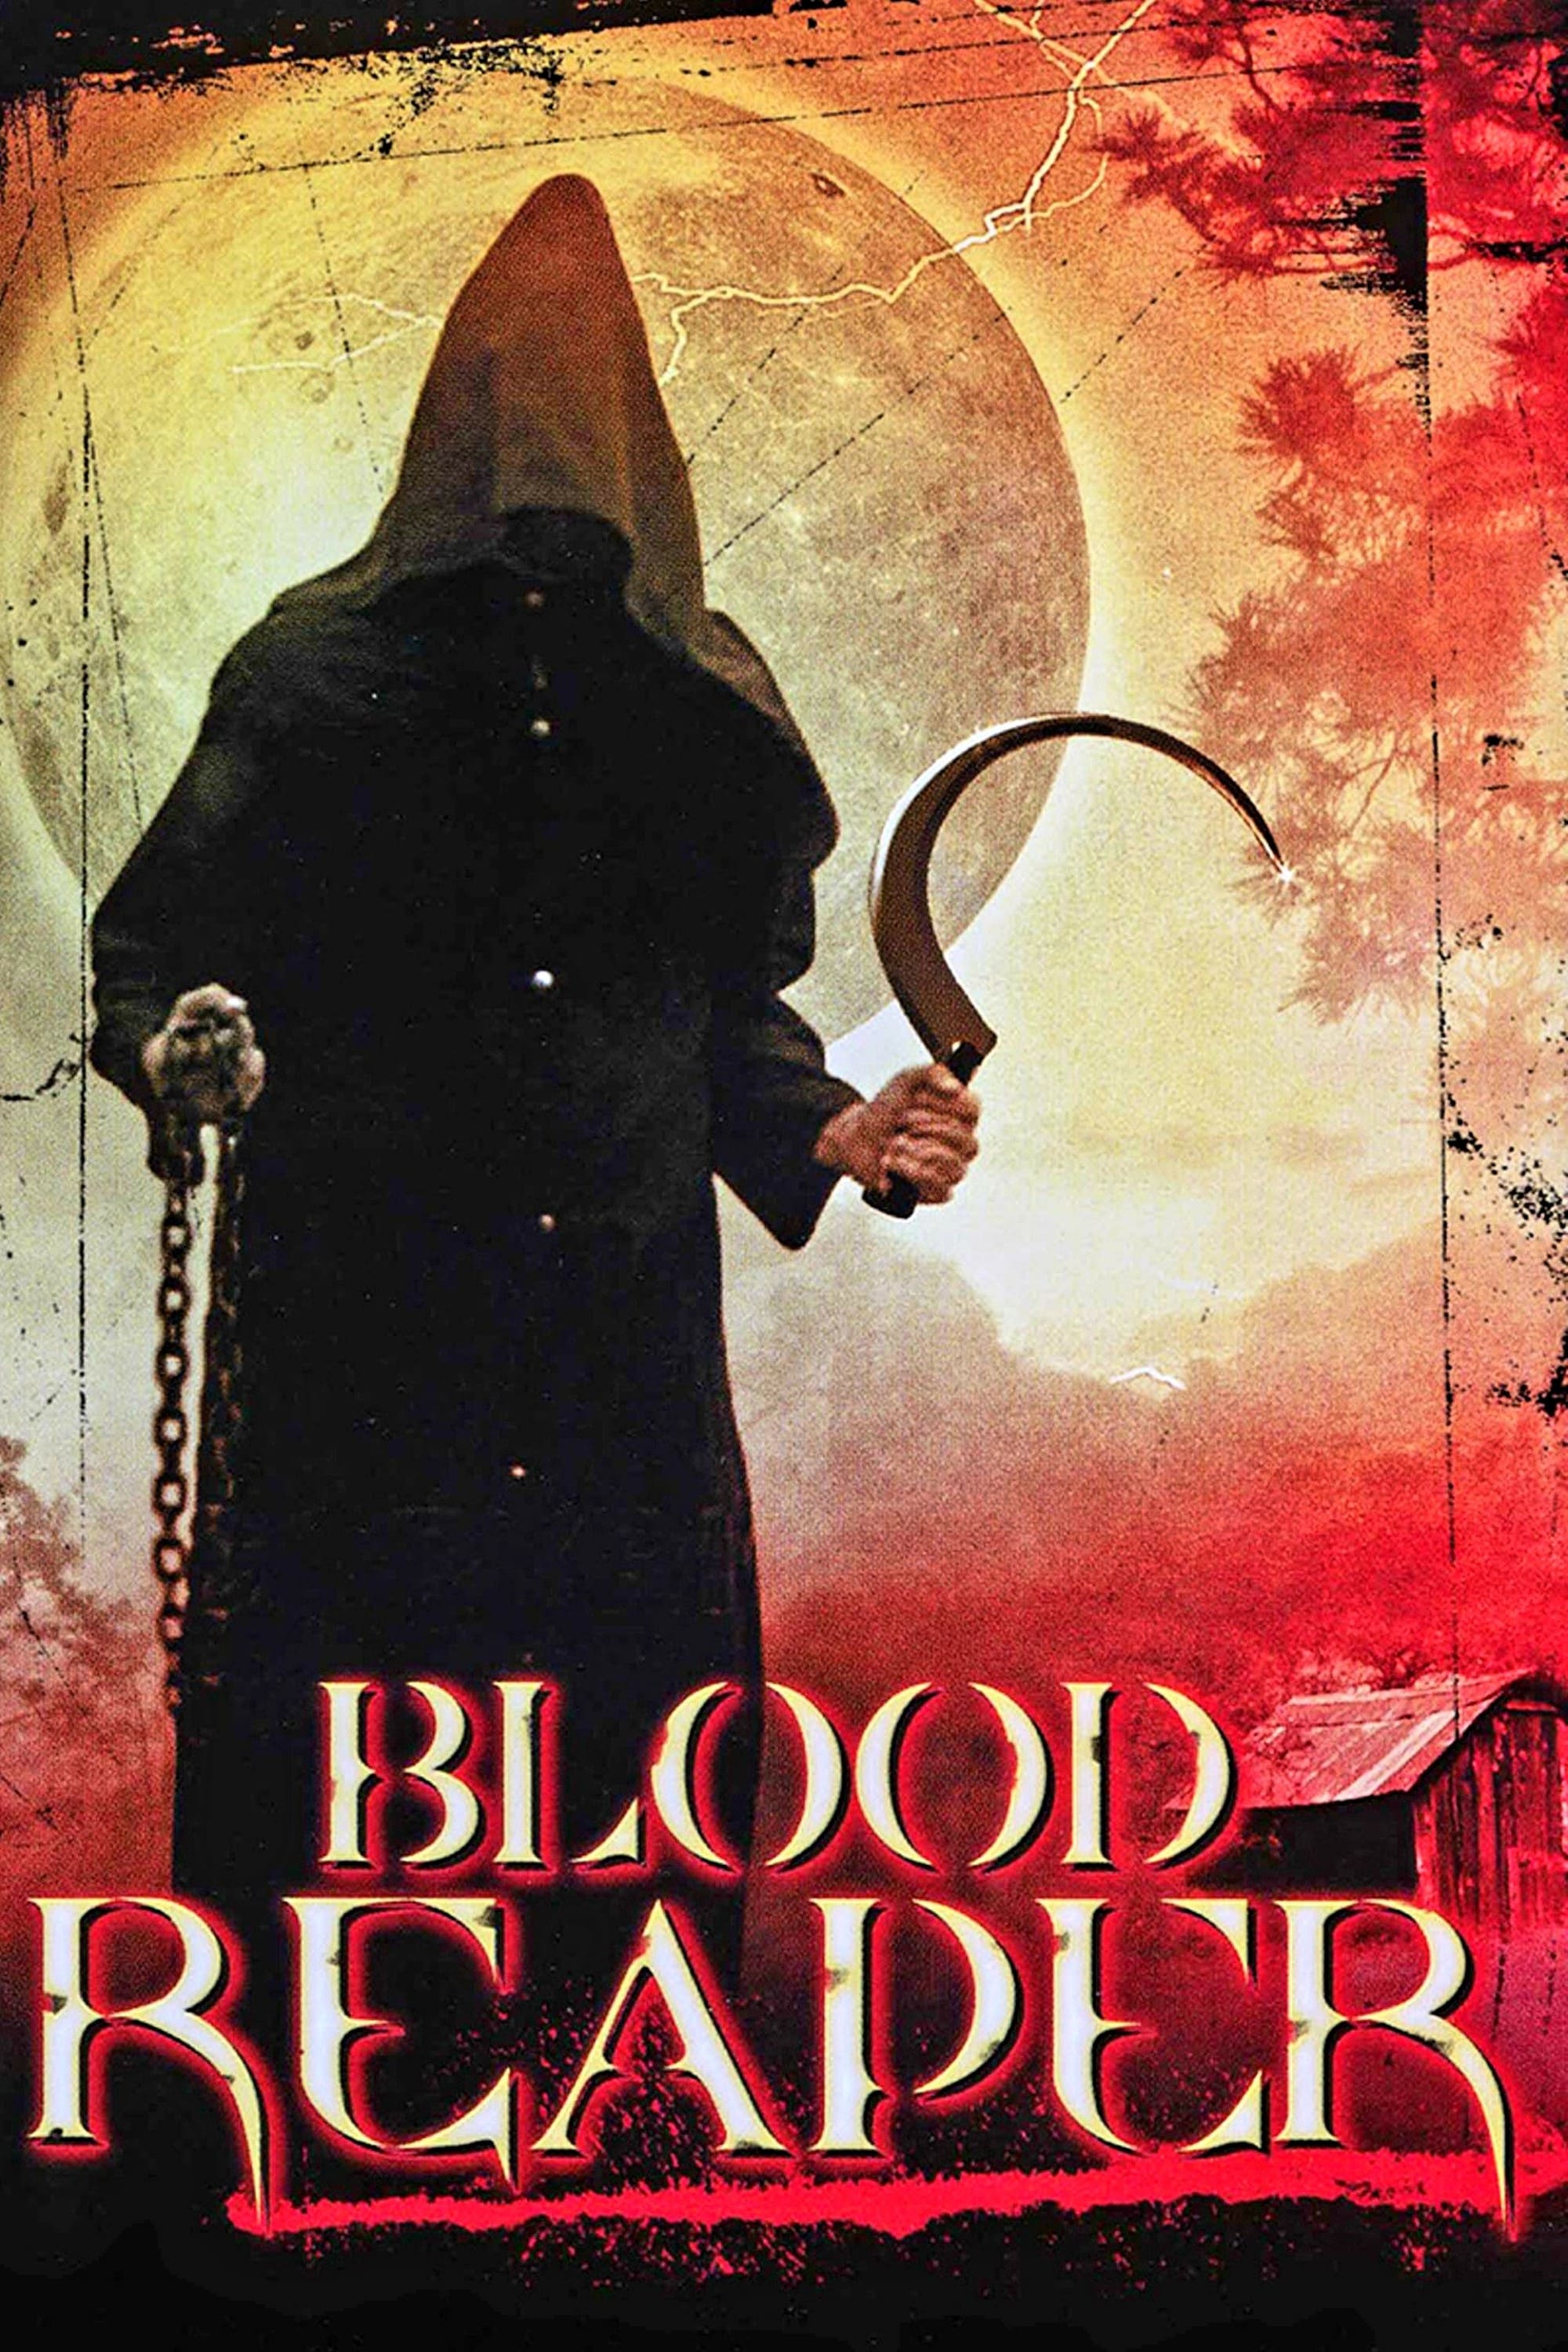 Blood Reaper (2004)